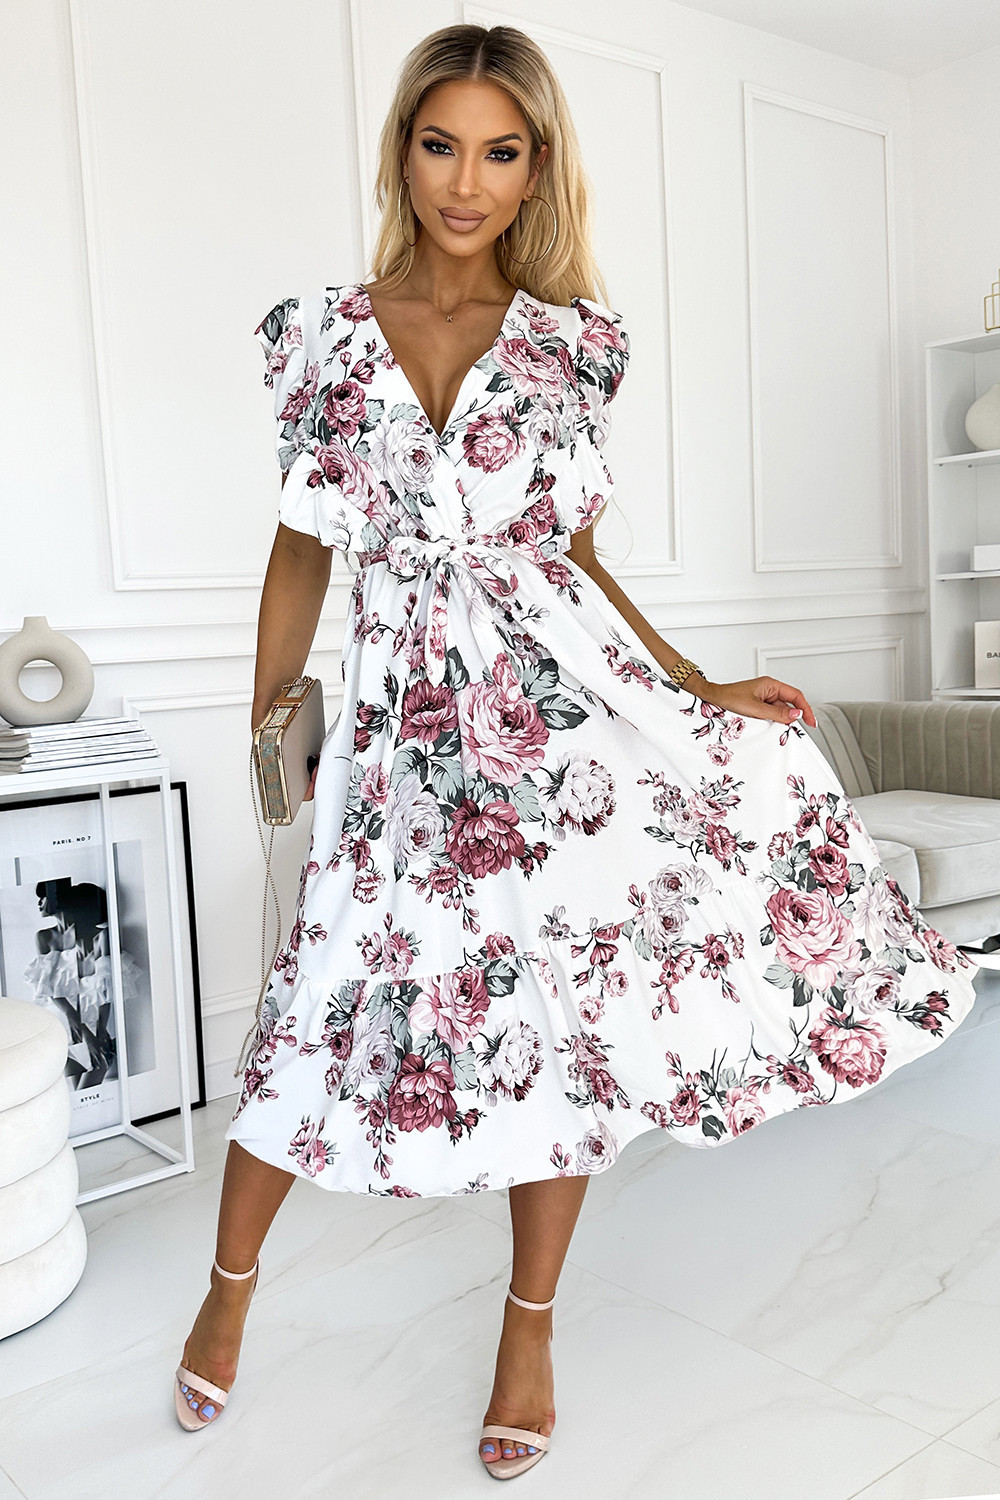 GABRIELLA - Bílé dámské šaty s volánky, výstřihem, zavazováním a se vzorem vínových bordó růží 466-1 UNI